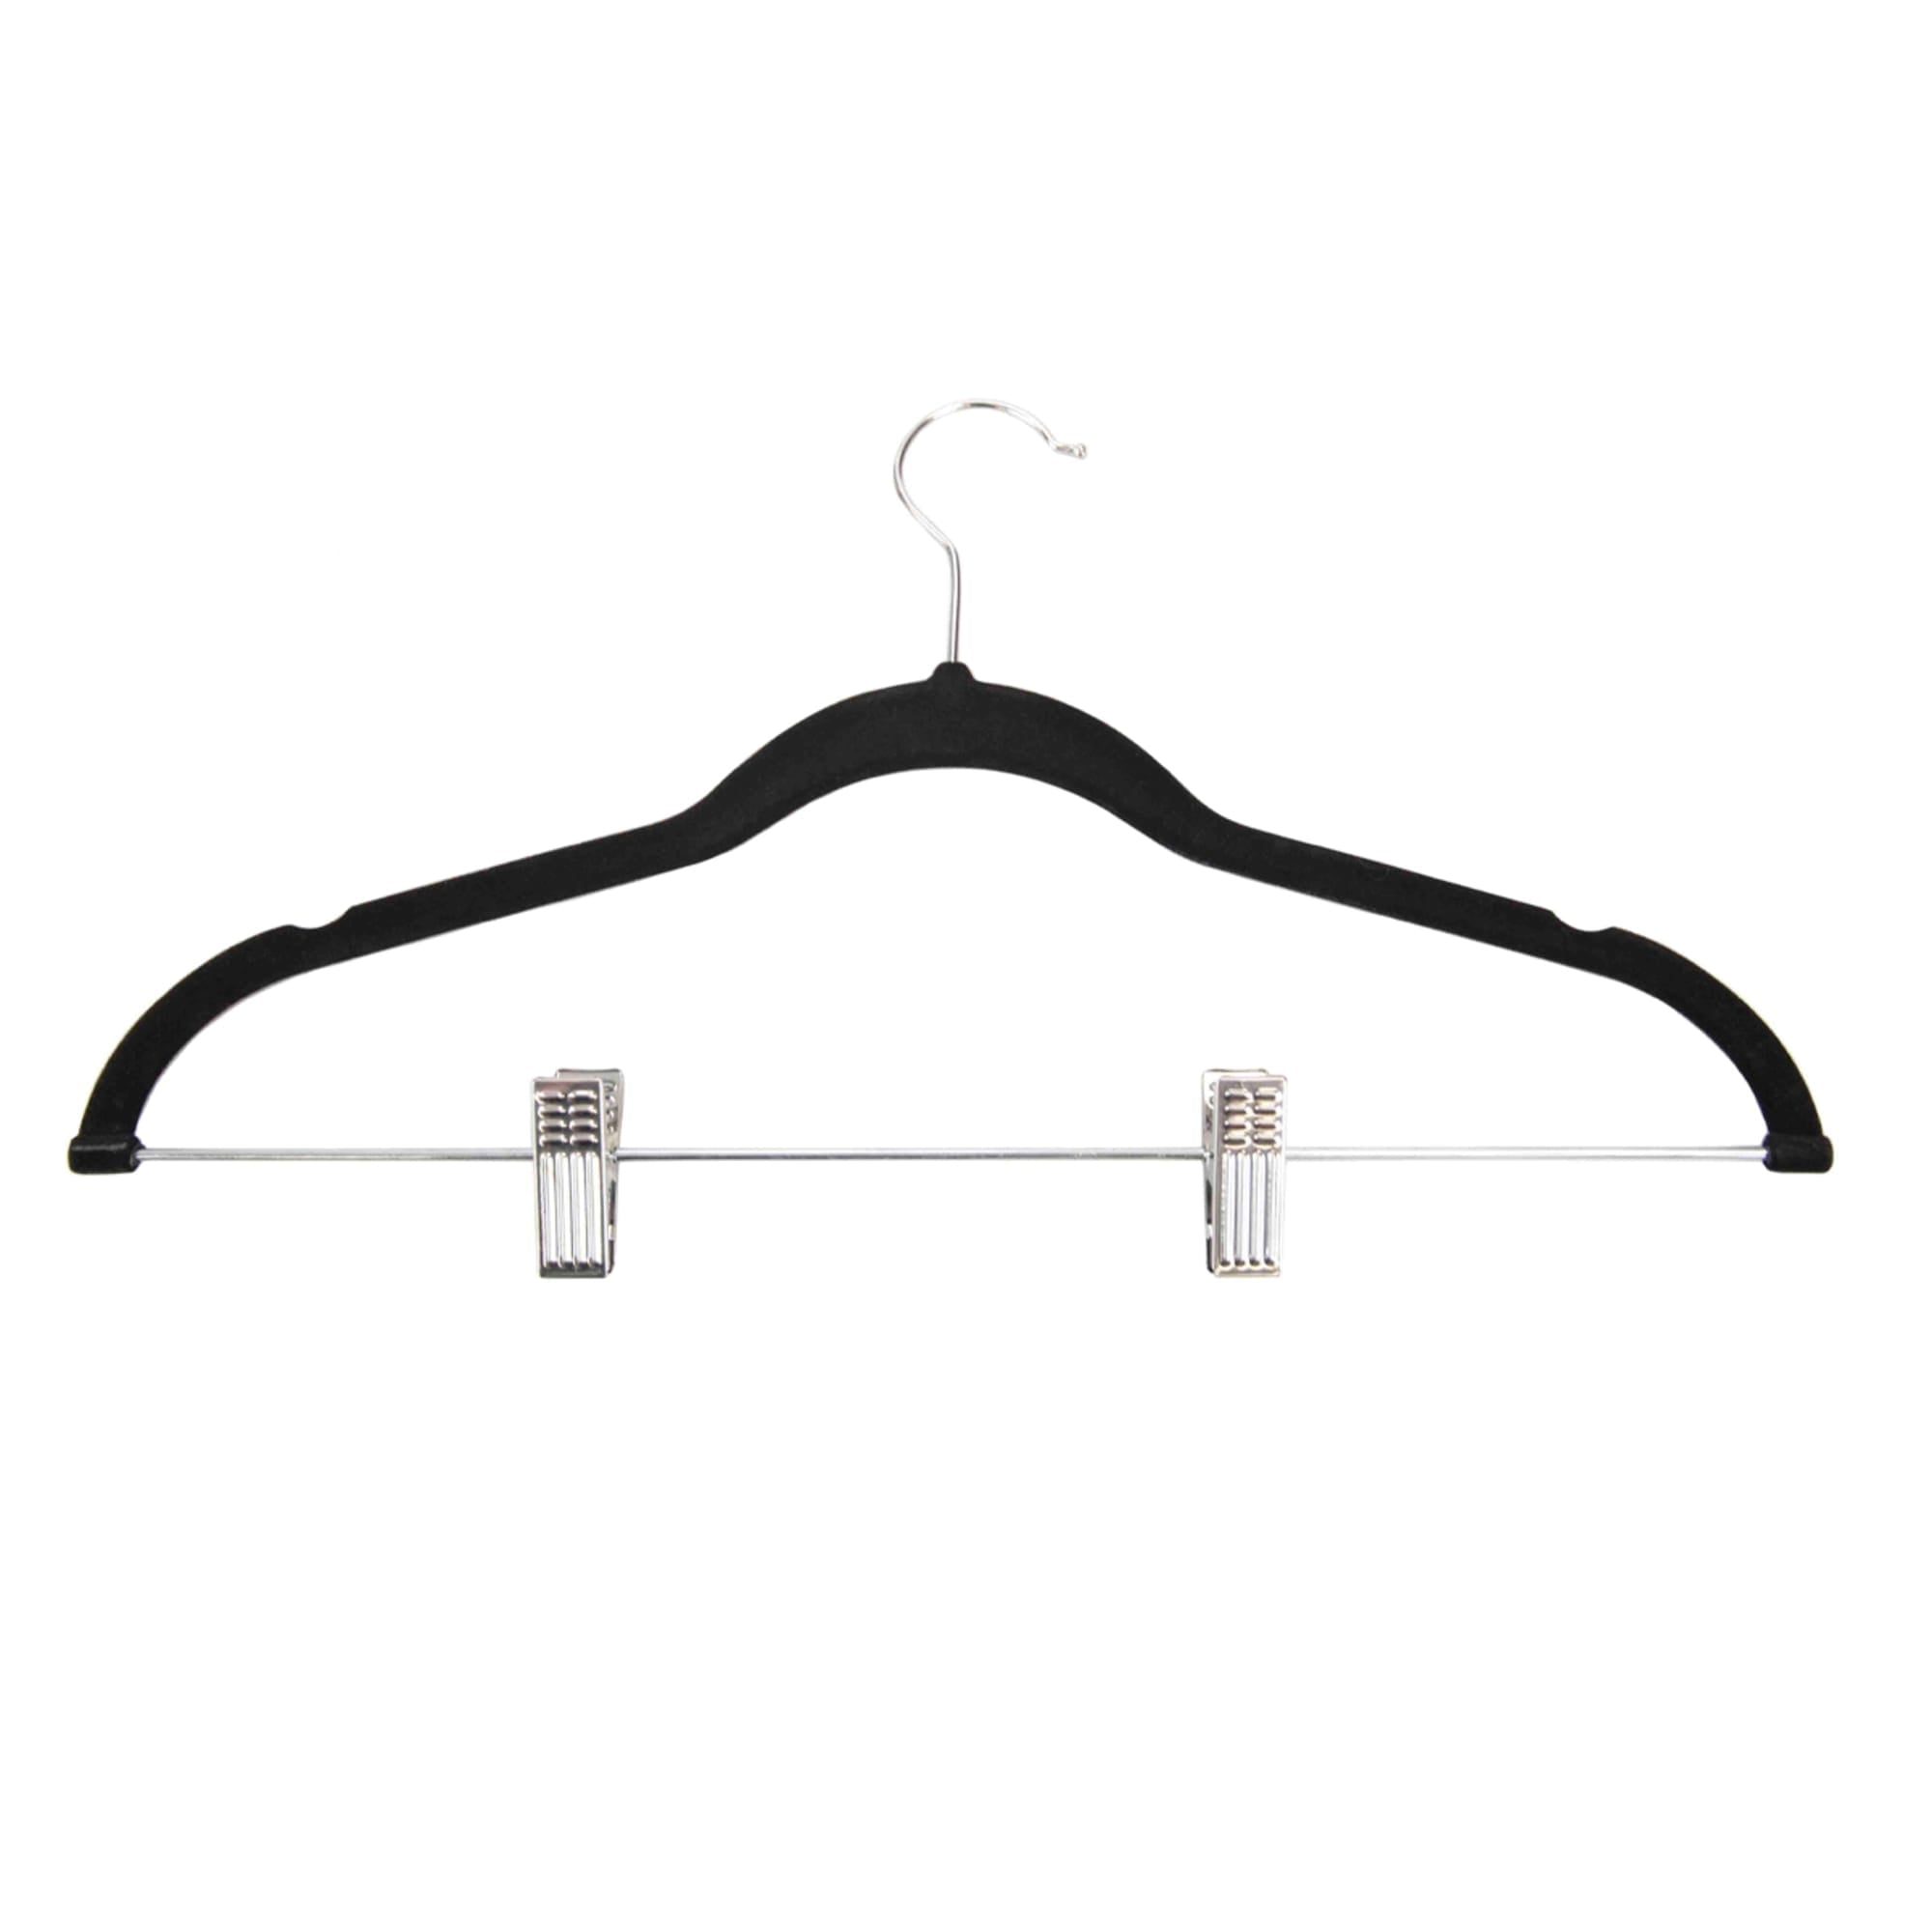 Home Basics Velvet Hangers With Clips, (Pack of 5), Black $4.00 EACH, CASE PACK OF 12